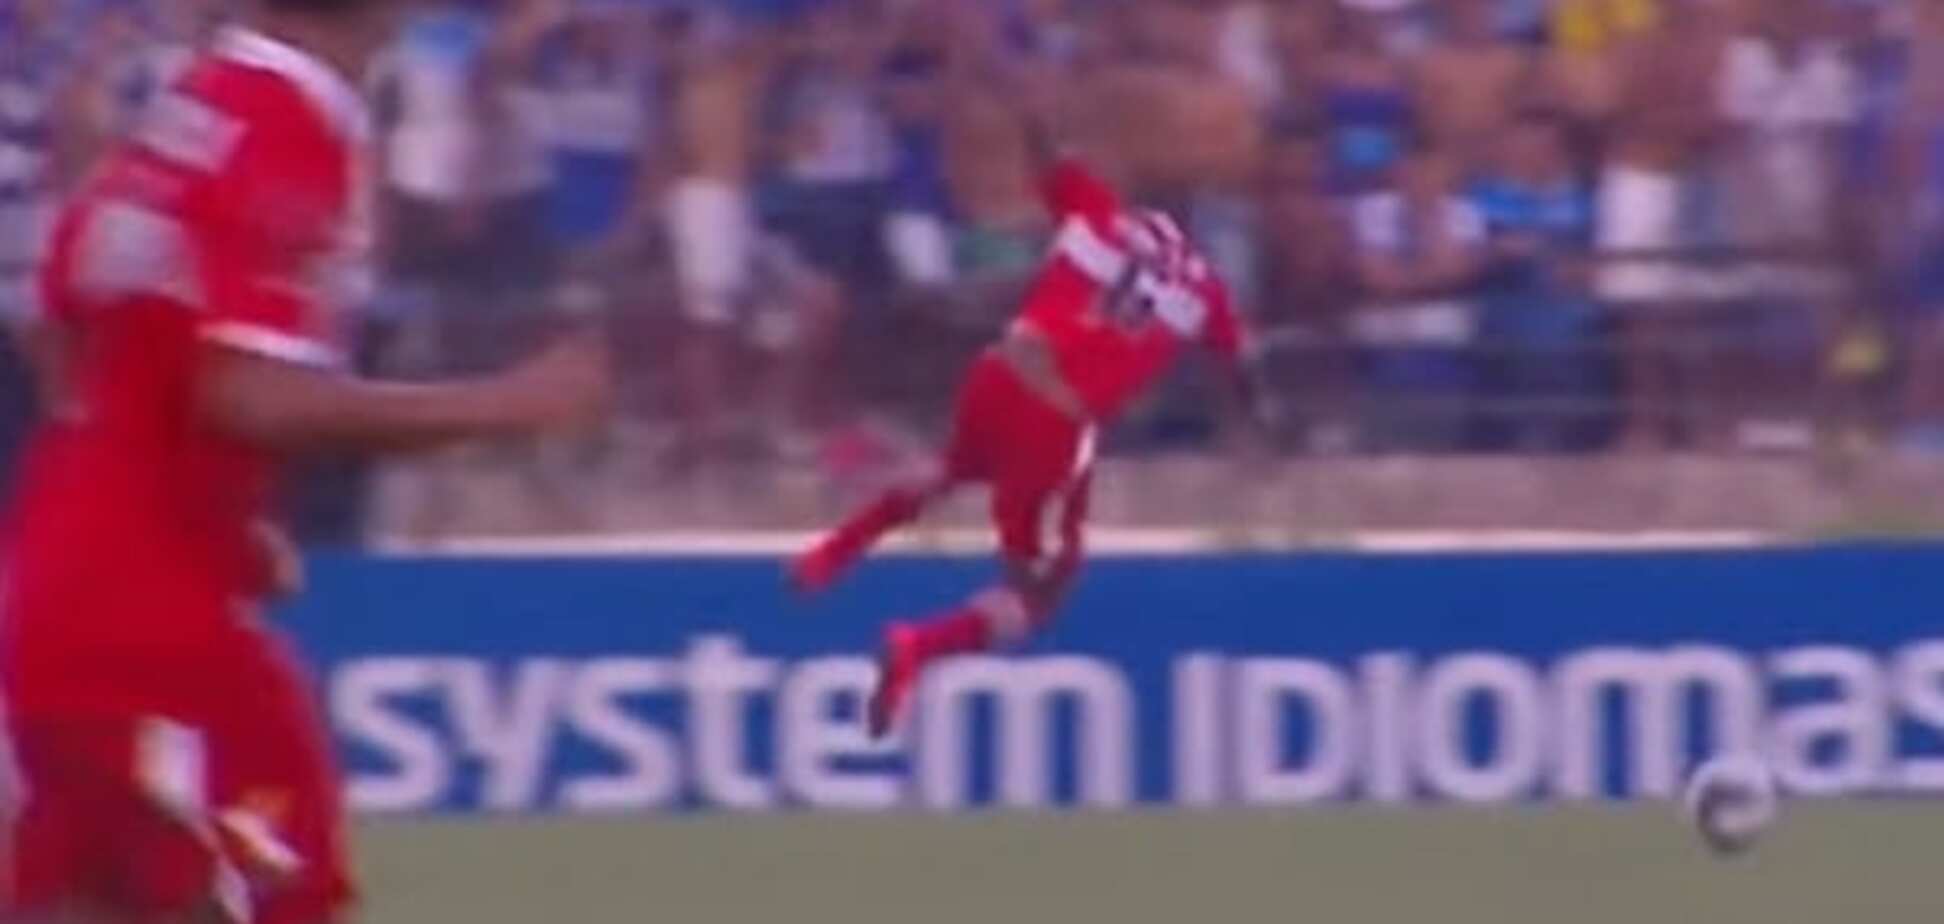 Бразильский футболист стал посмешищем во время матча: видео курьеза